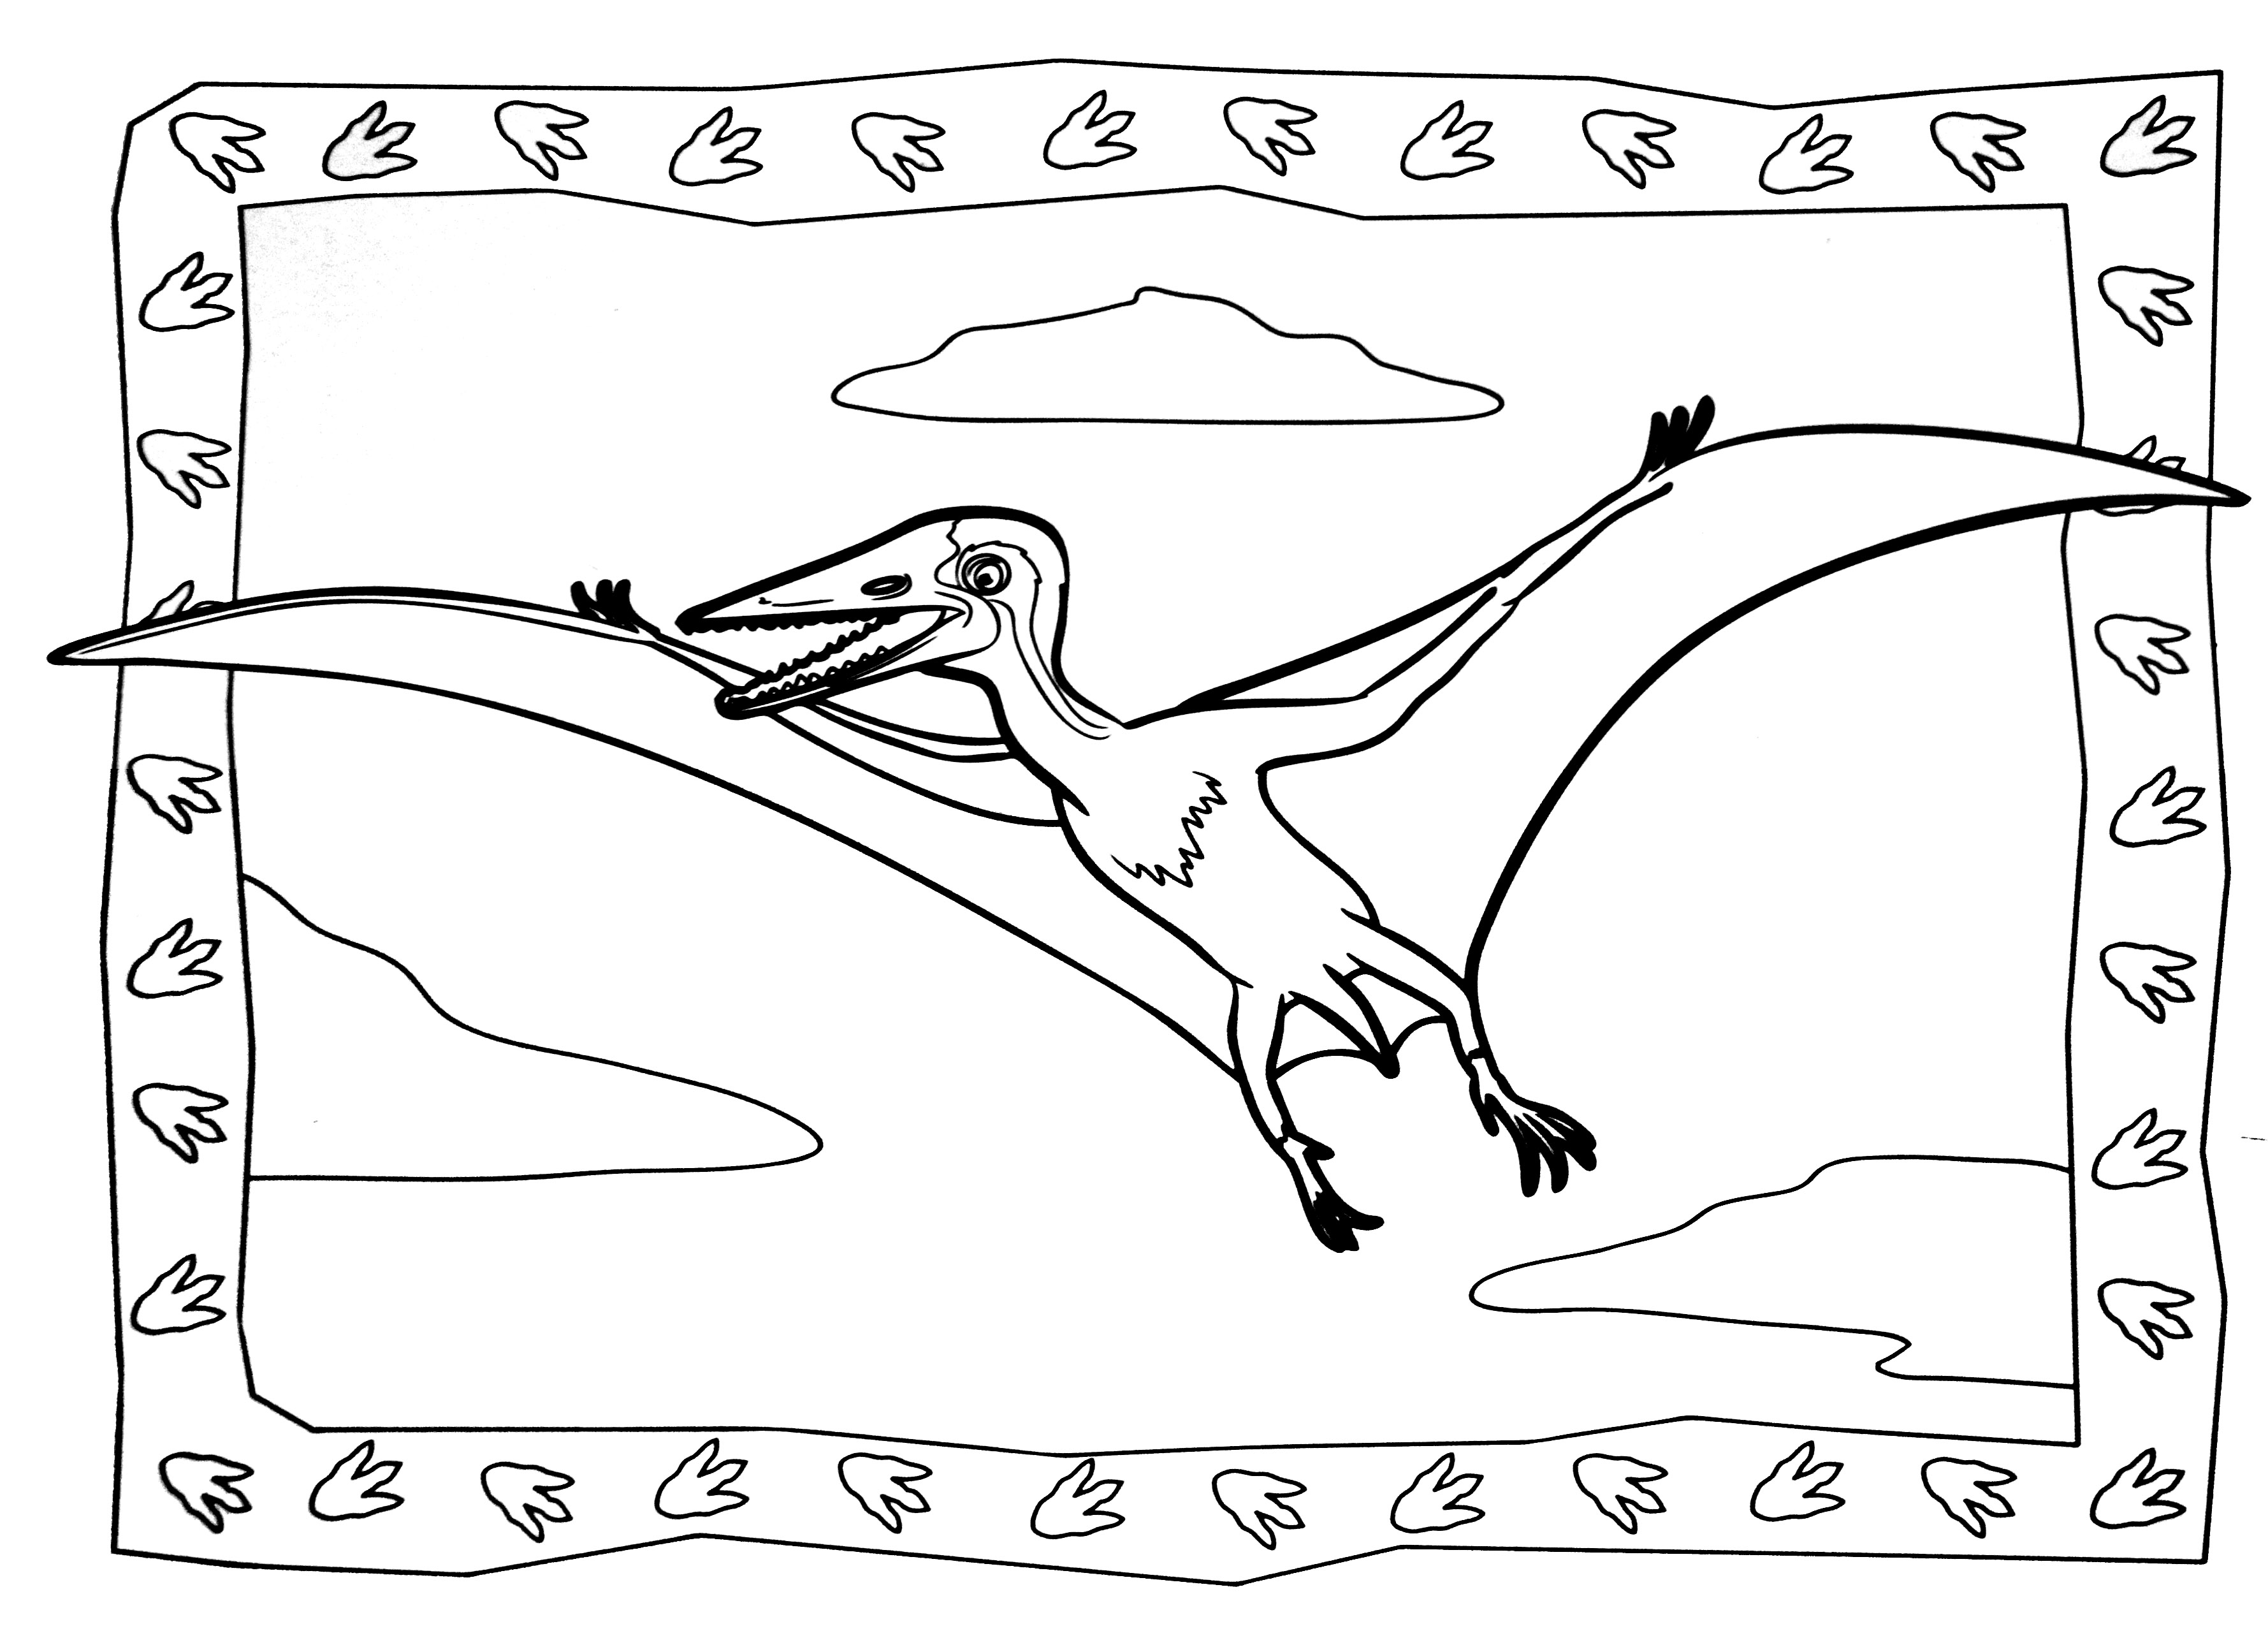 Simple Dibujos para colorear de Dinosaurios para imprimir y colorear -  Dinosaurios - Just Color Niños : Dibujos para colorear para niños